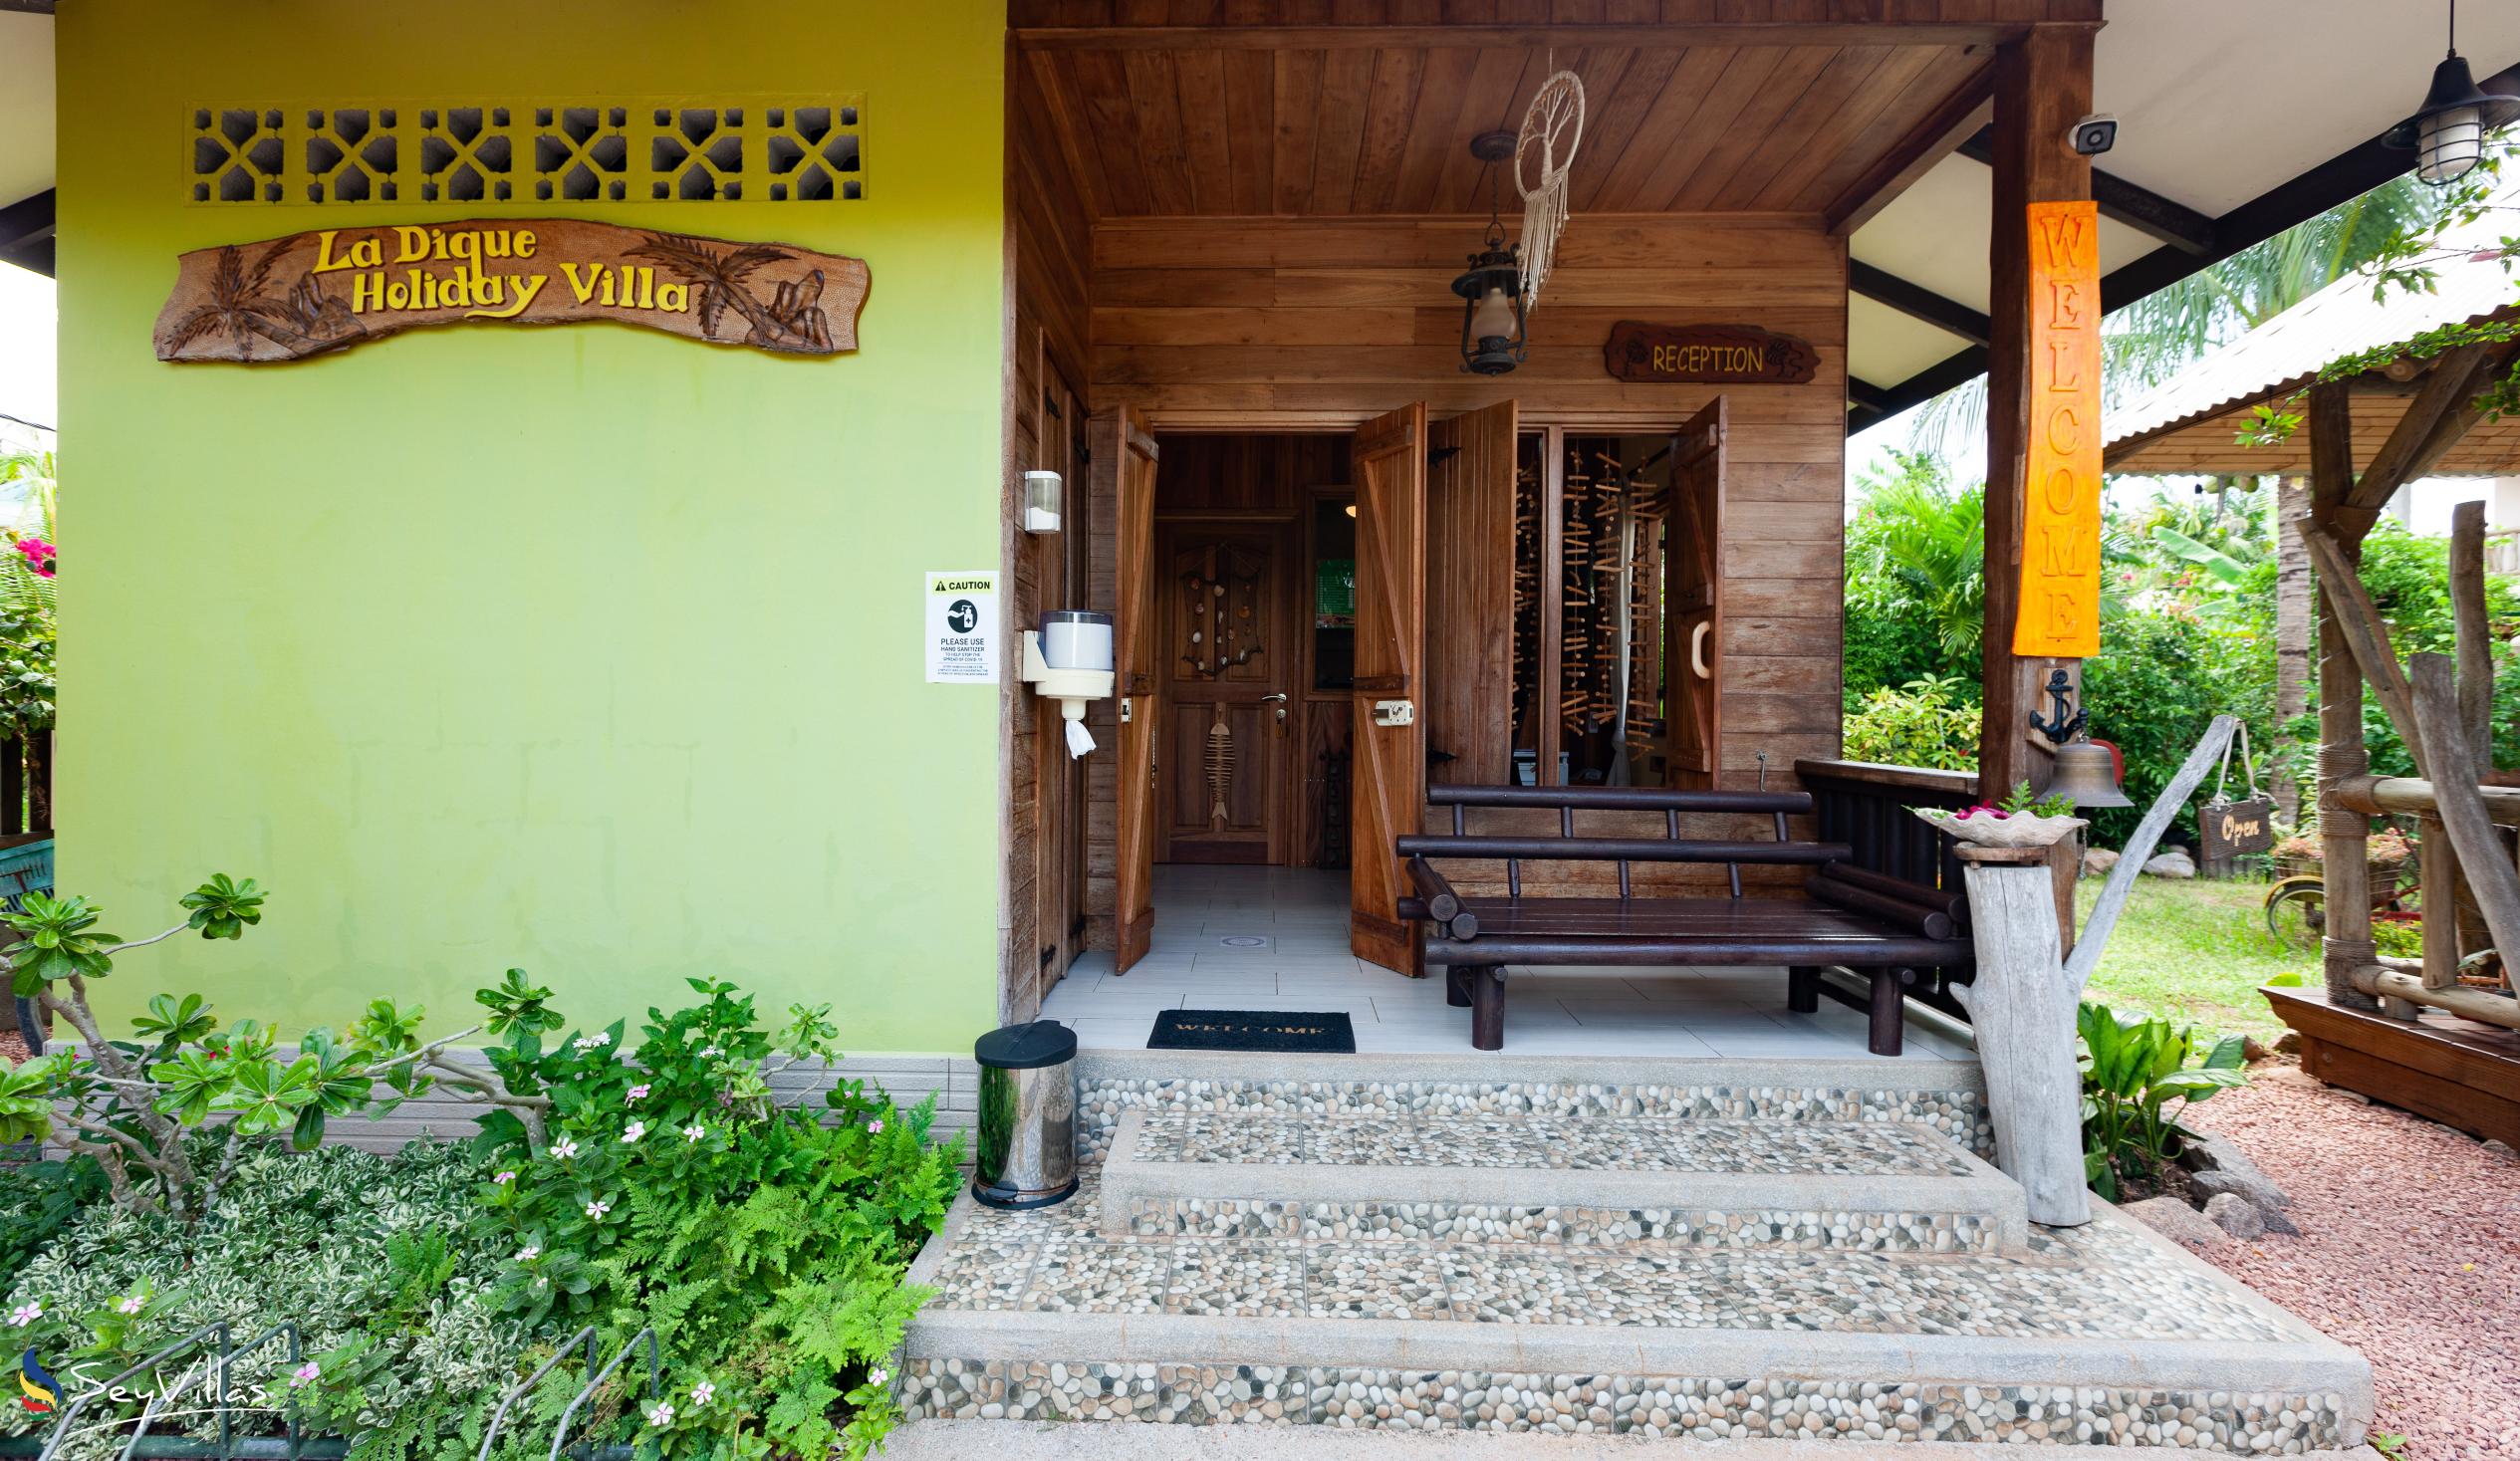 Foto 34: La Digue Holiday Villa - Innenbereich - La Digue (Seychellen)